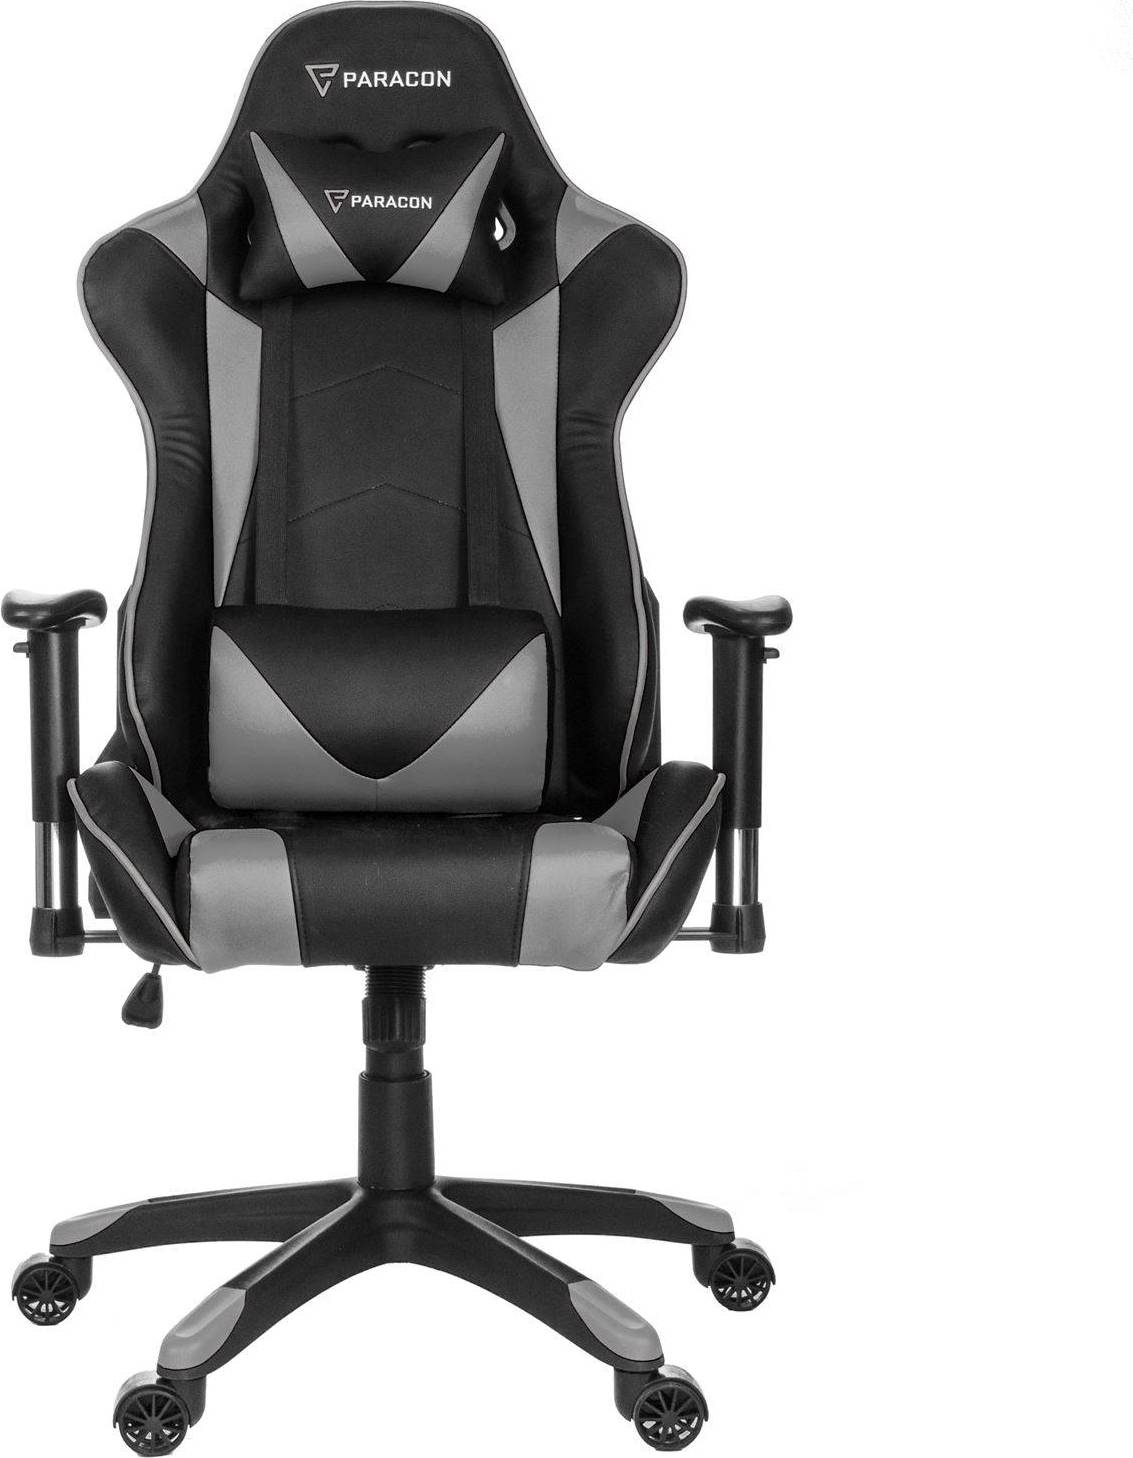  Bild på Paracon Knight Gaming Chair - Black/Grey gamingstol